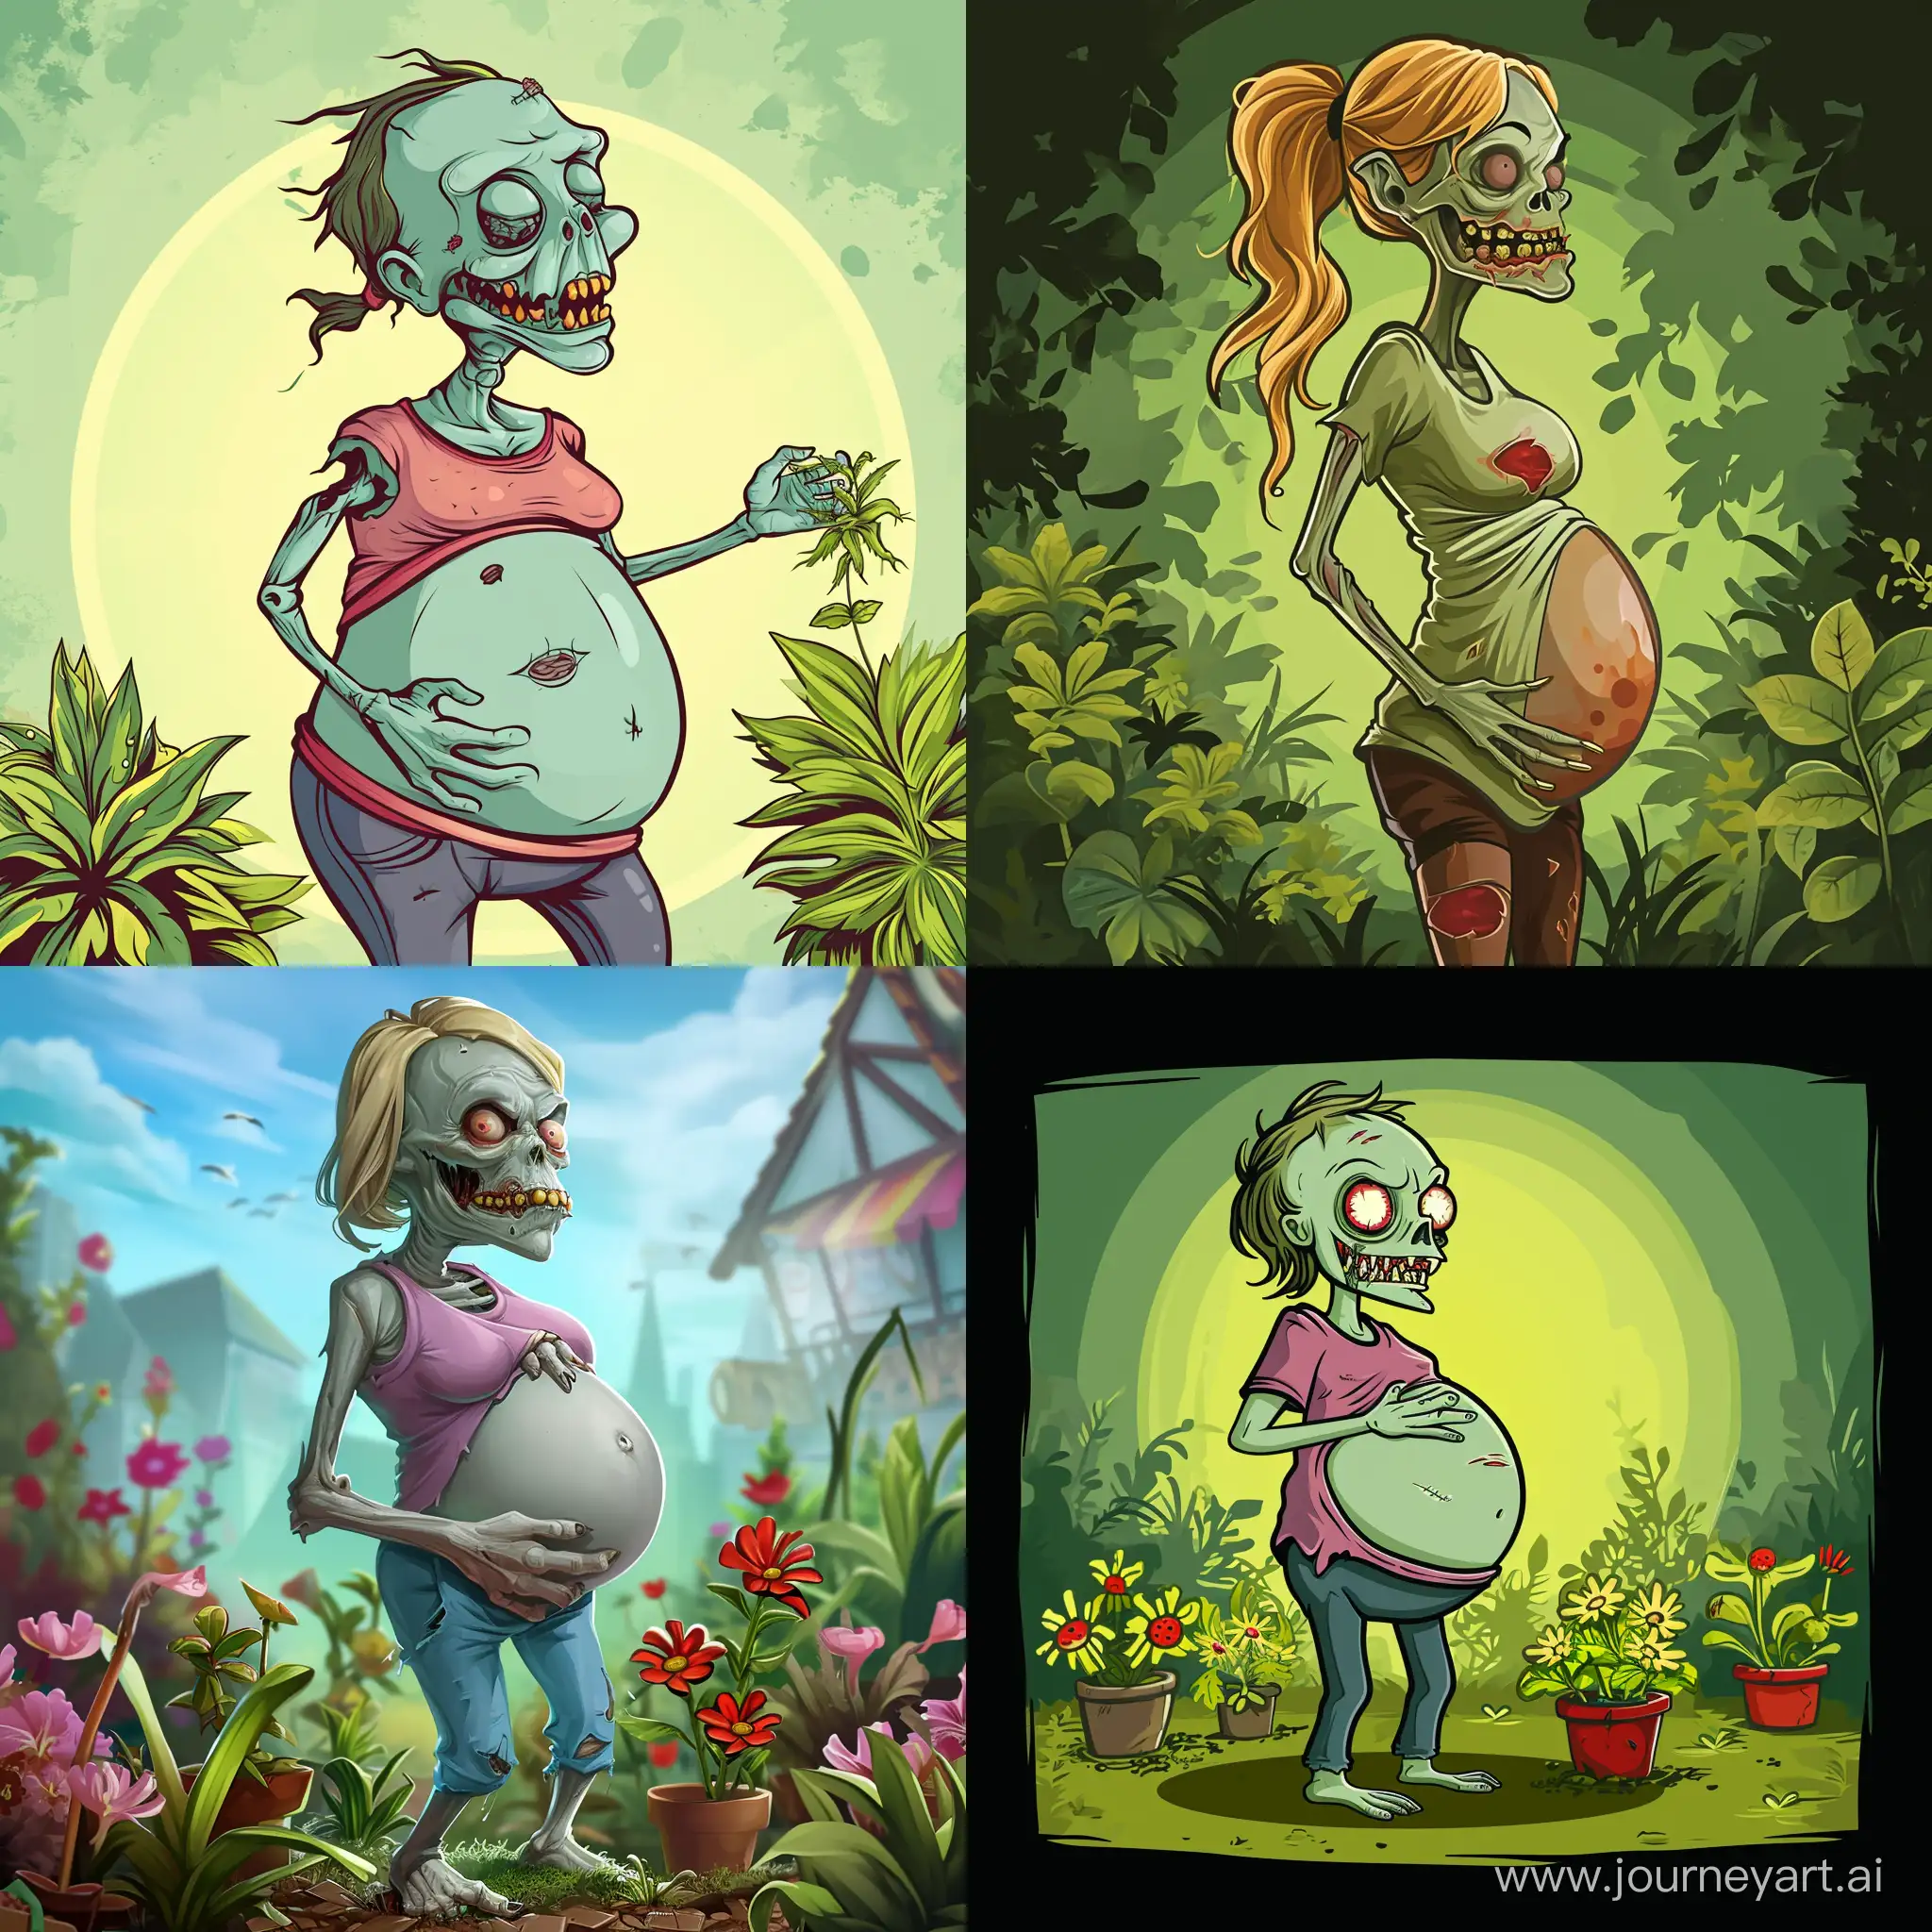 Prengnant zombie vs plants